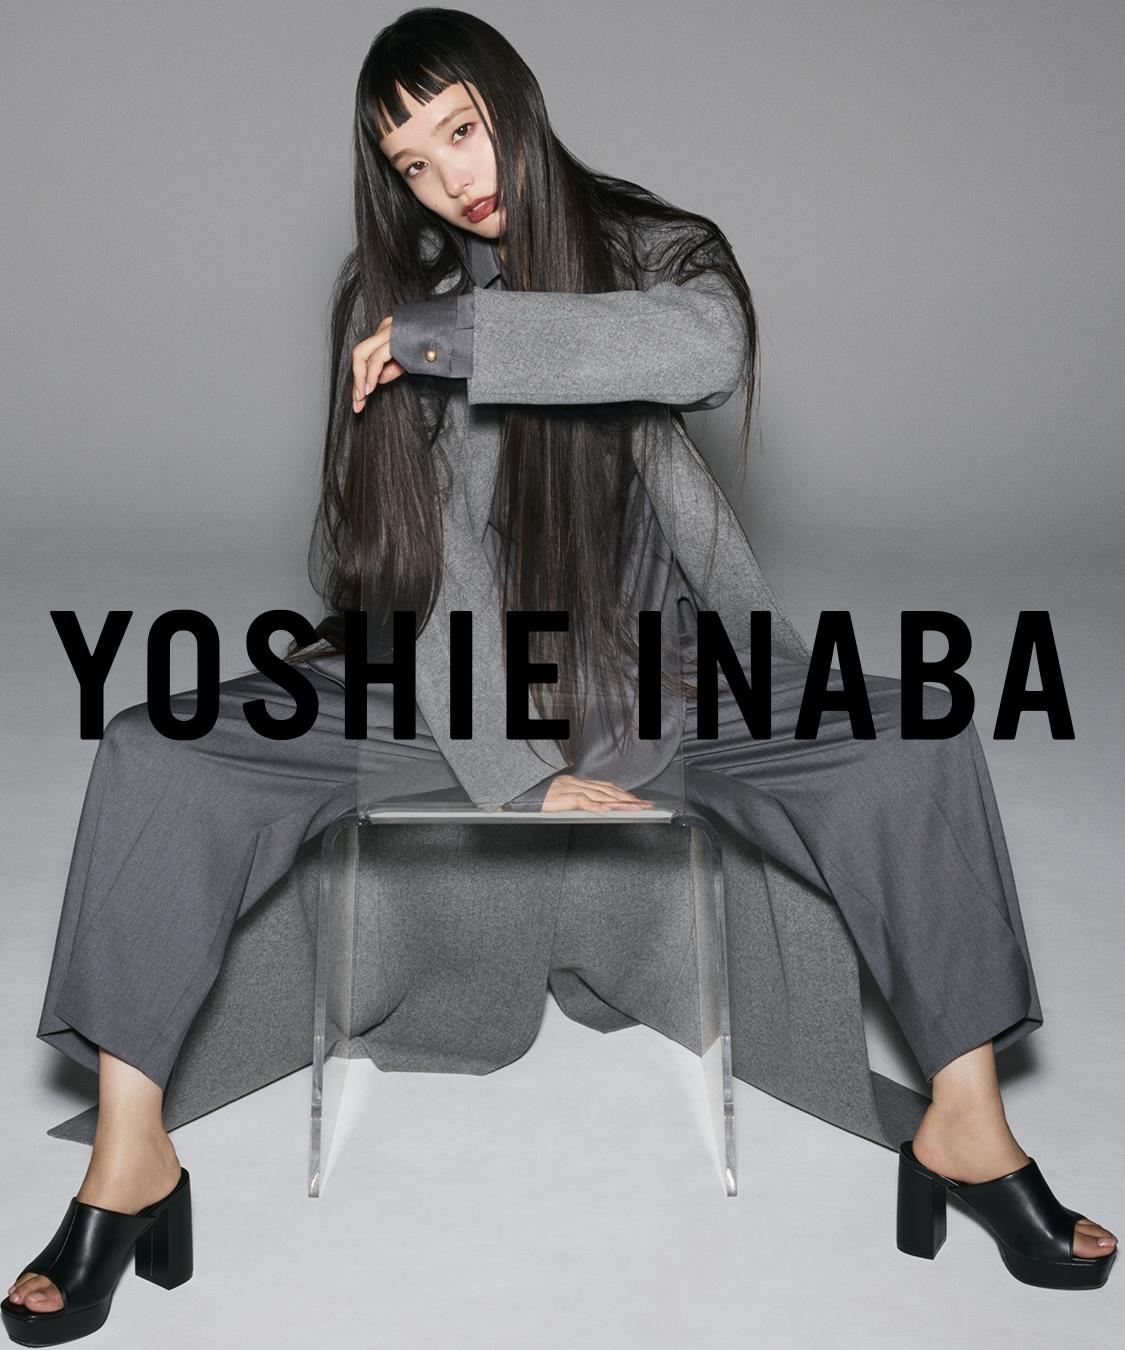 yoshie inaba | ヨシエイナバ